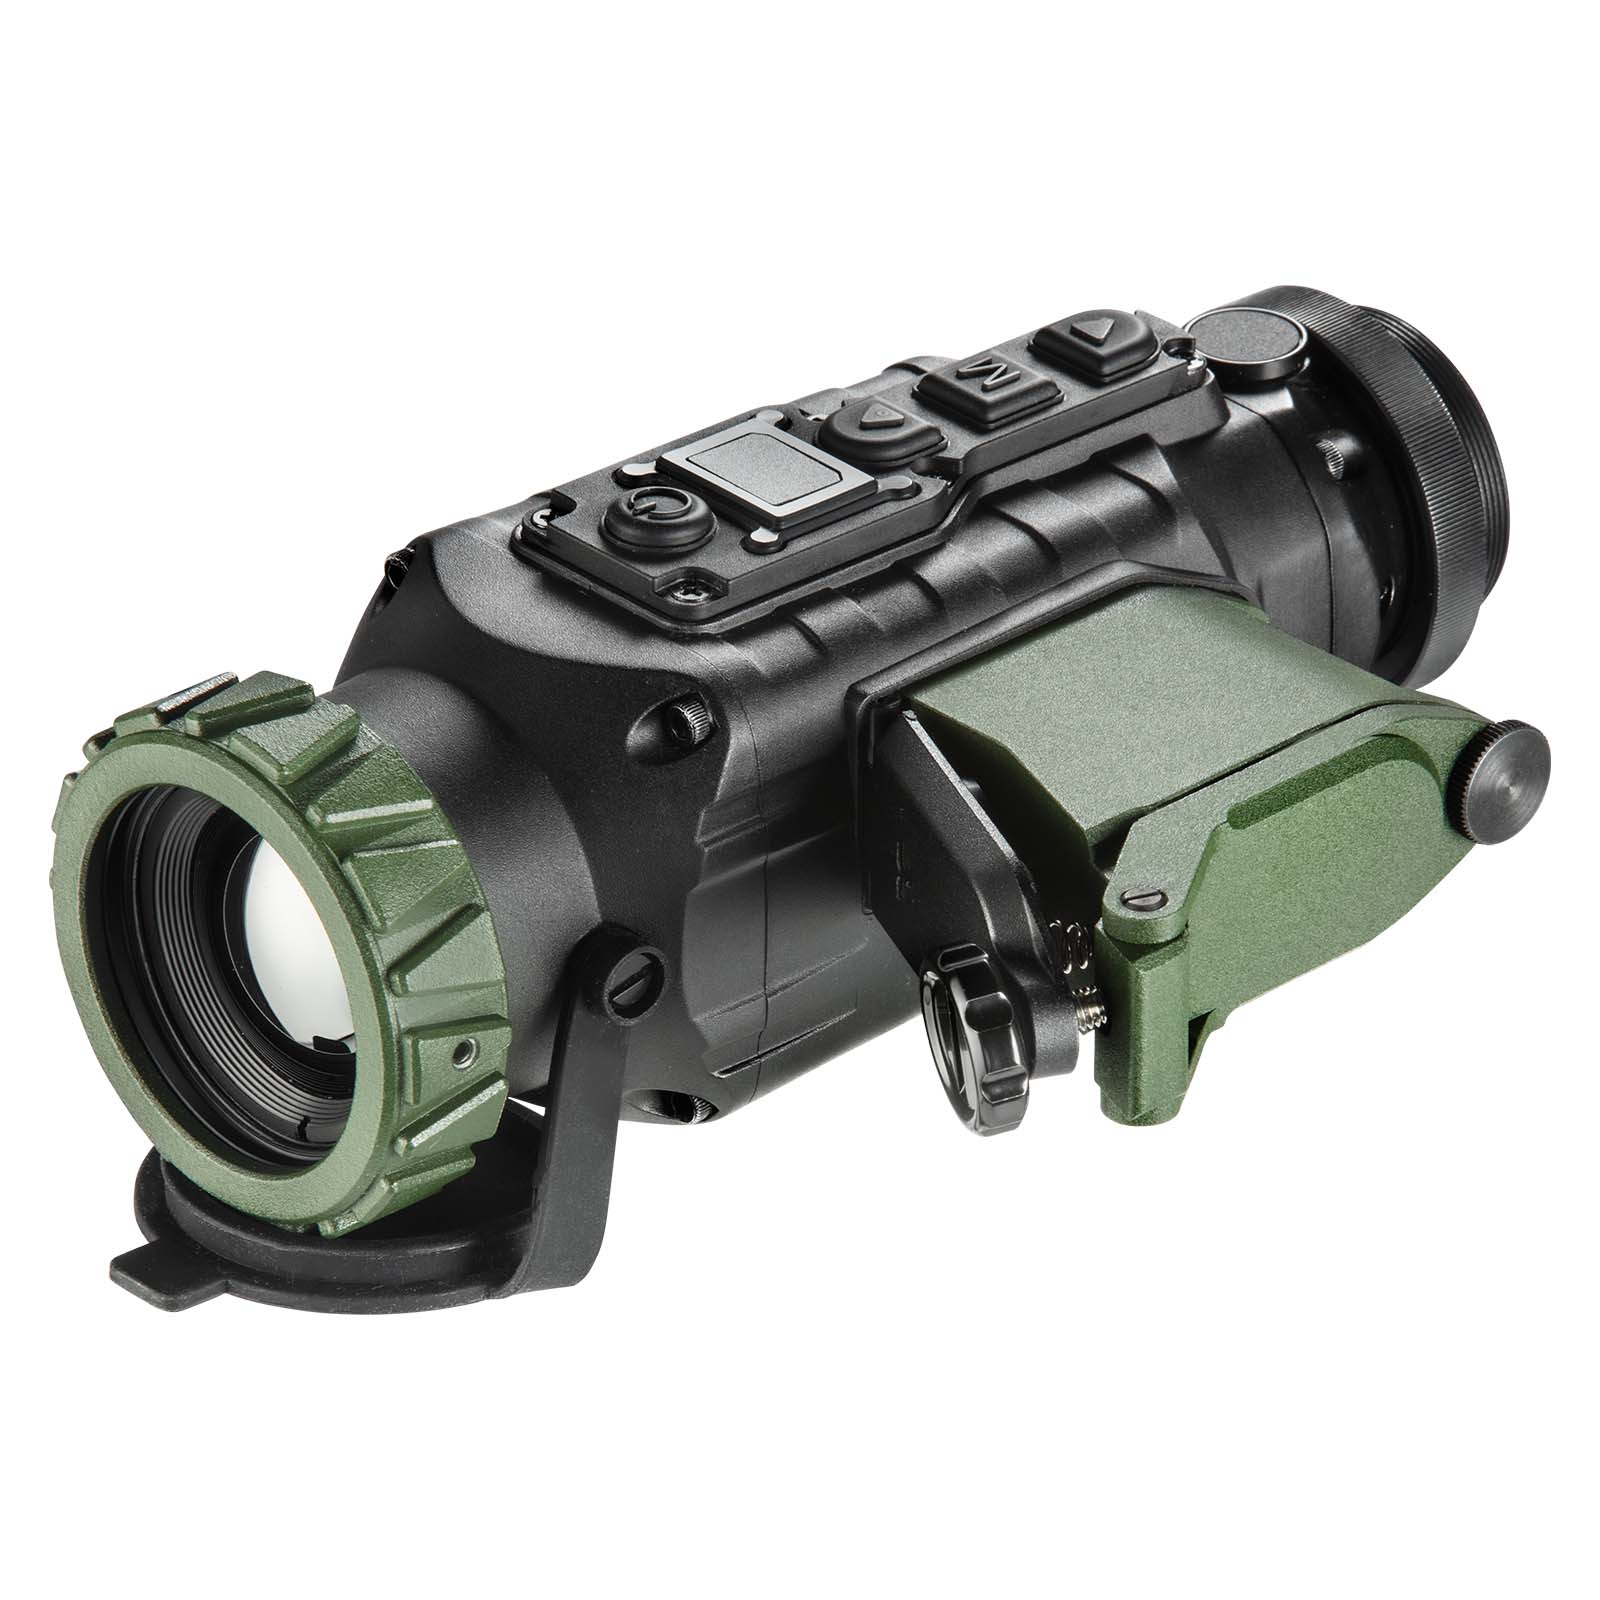 Es handelt sich hier um LAHOUX Clip 35 - Wärmebildkamera / Vorsatzgerät für die Jagd.